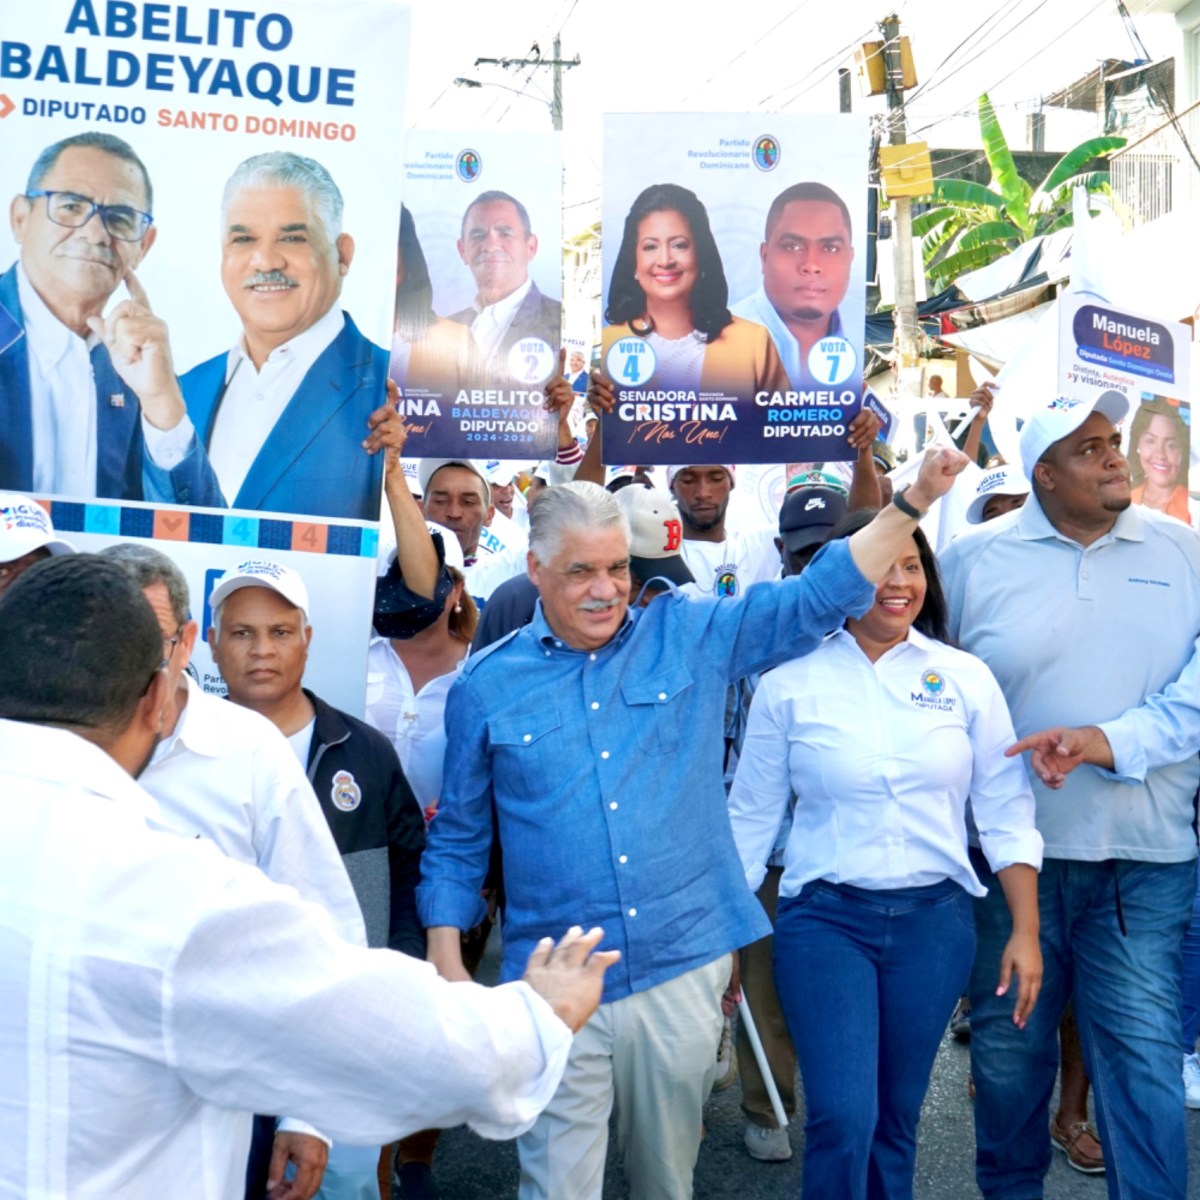 el Gobierno debe entender que el endeudamiento atenta contra estabilidad –  (República Dominicana)